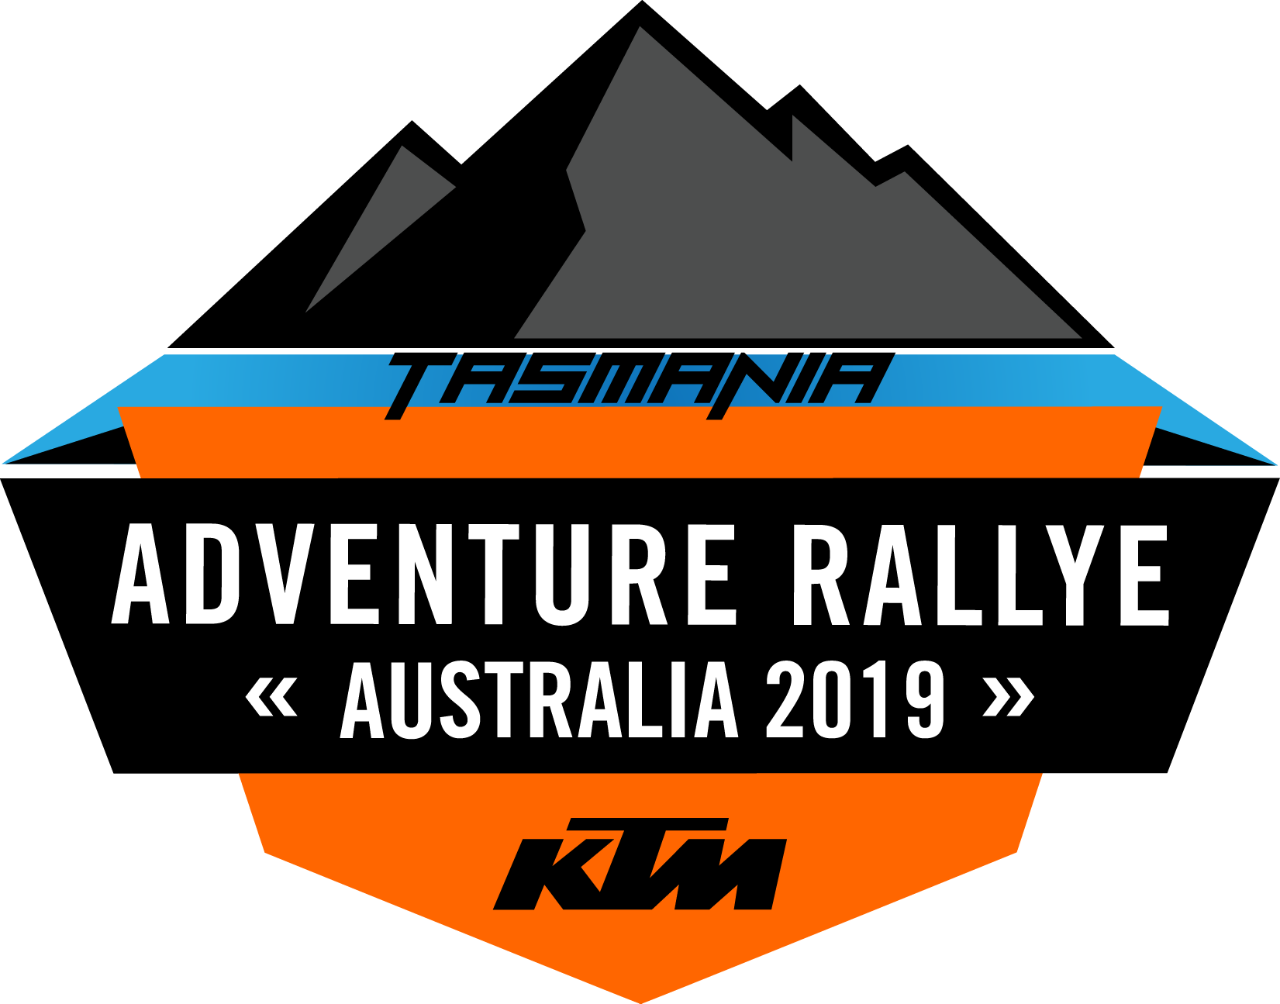 2019 KTM Australia Adventure Rallye: Tasmania